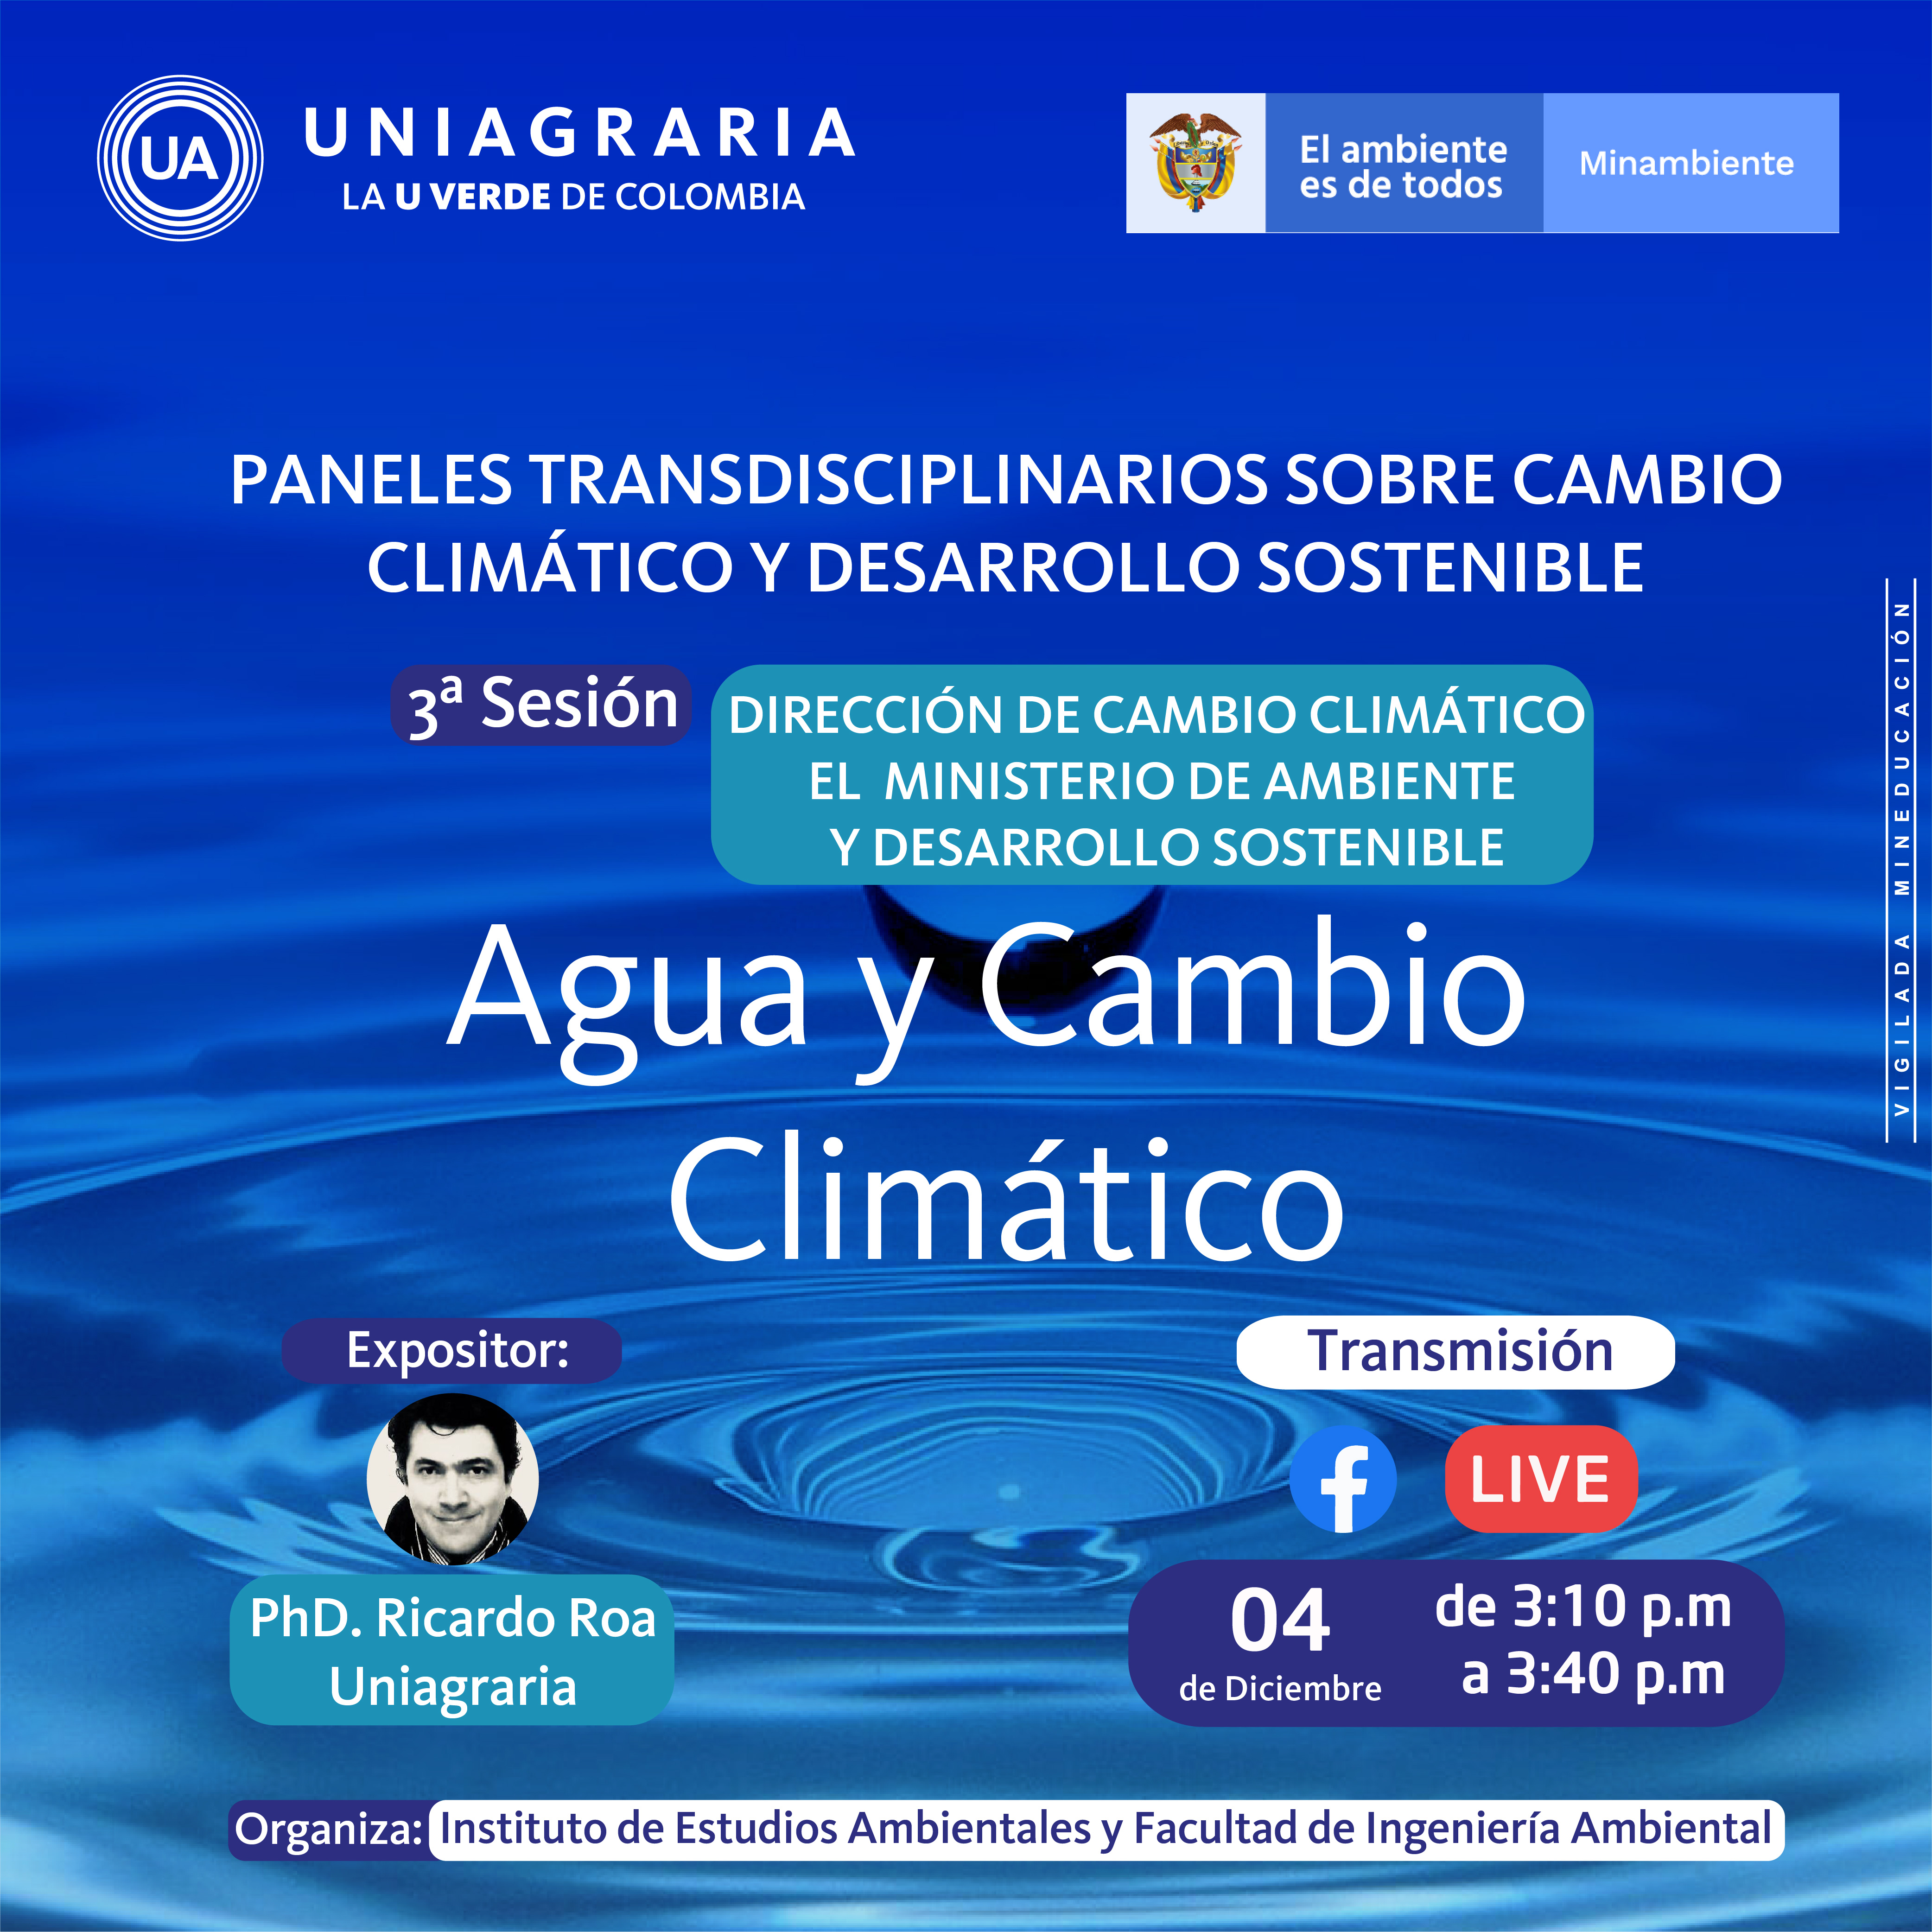 Paneles transdisciplinarios sobre cambio climático y desarrollo sostenible